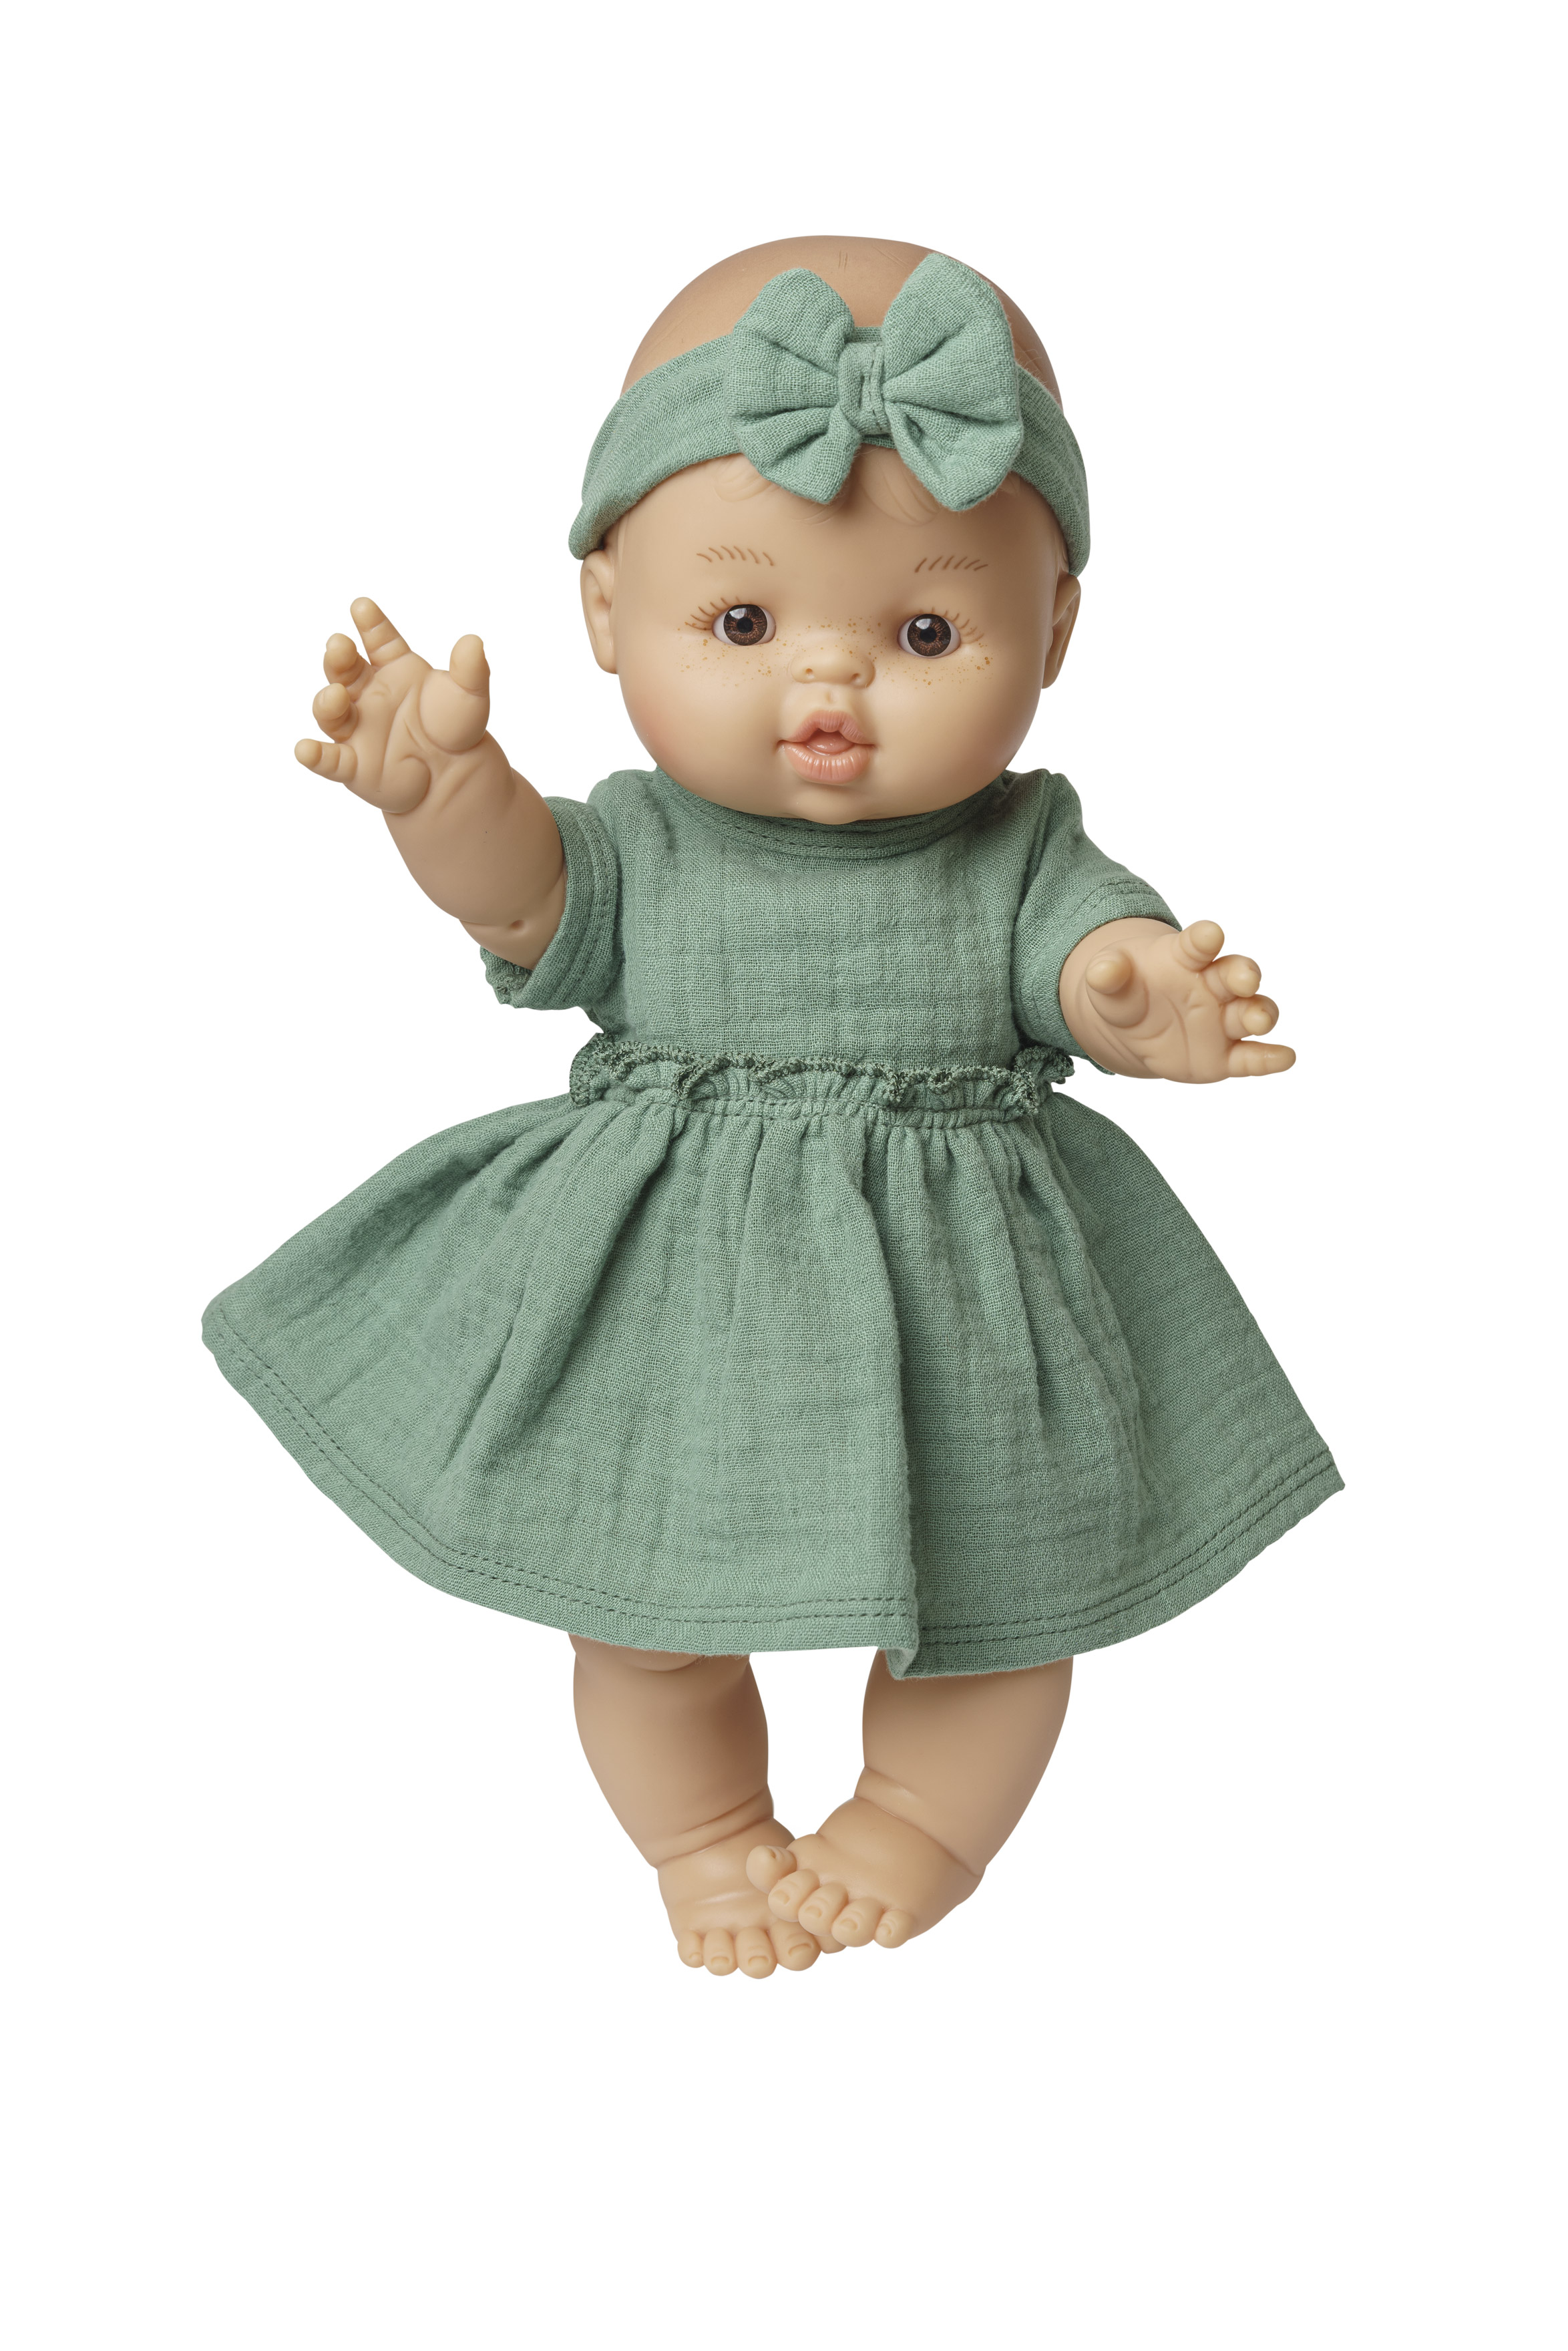 Set: Puppe mit Biokleid, salbeigrün, Mädchen, 34 cm